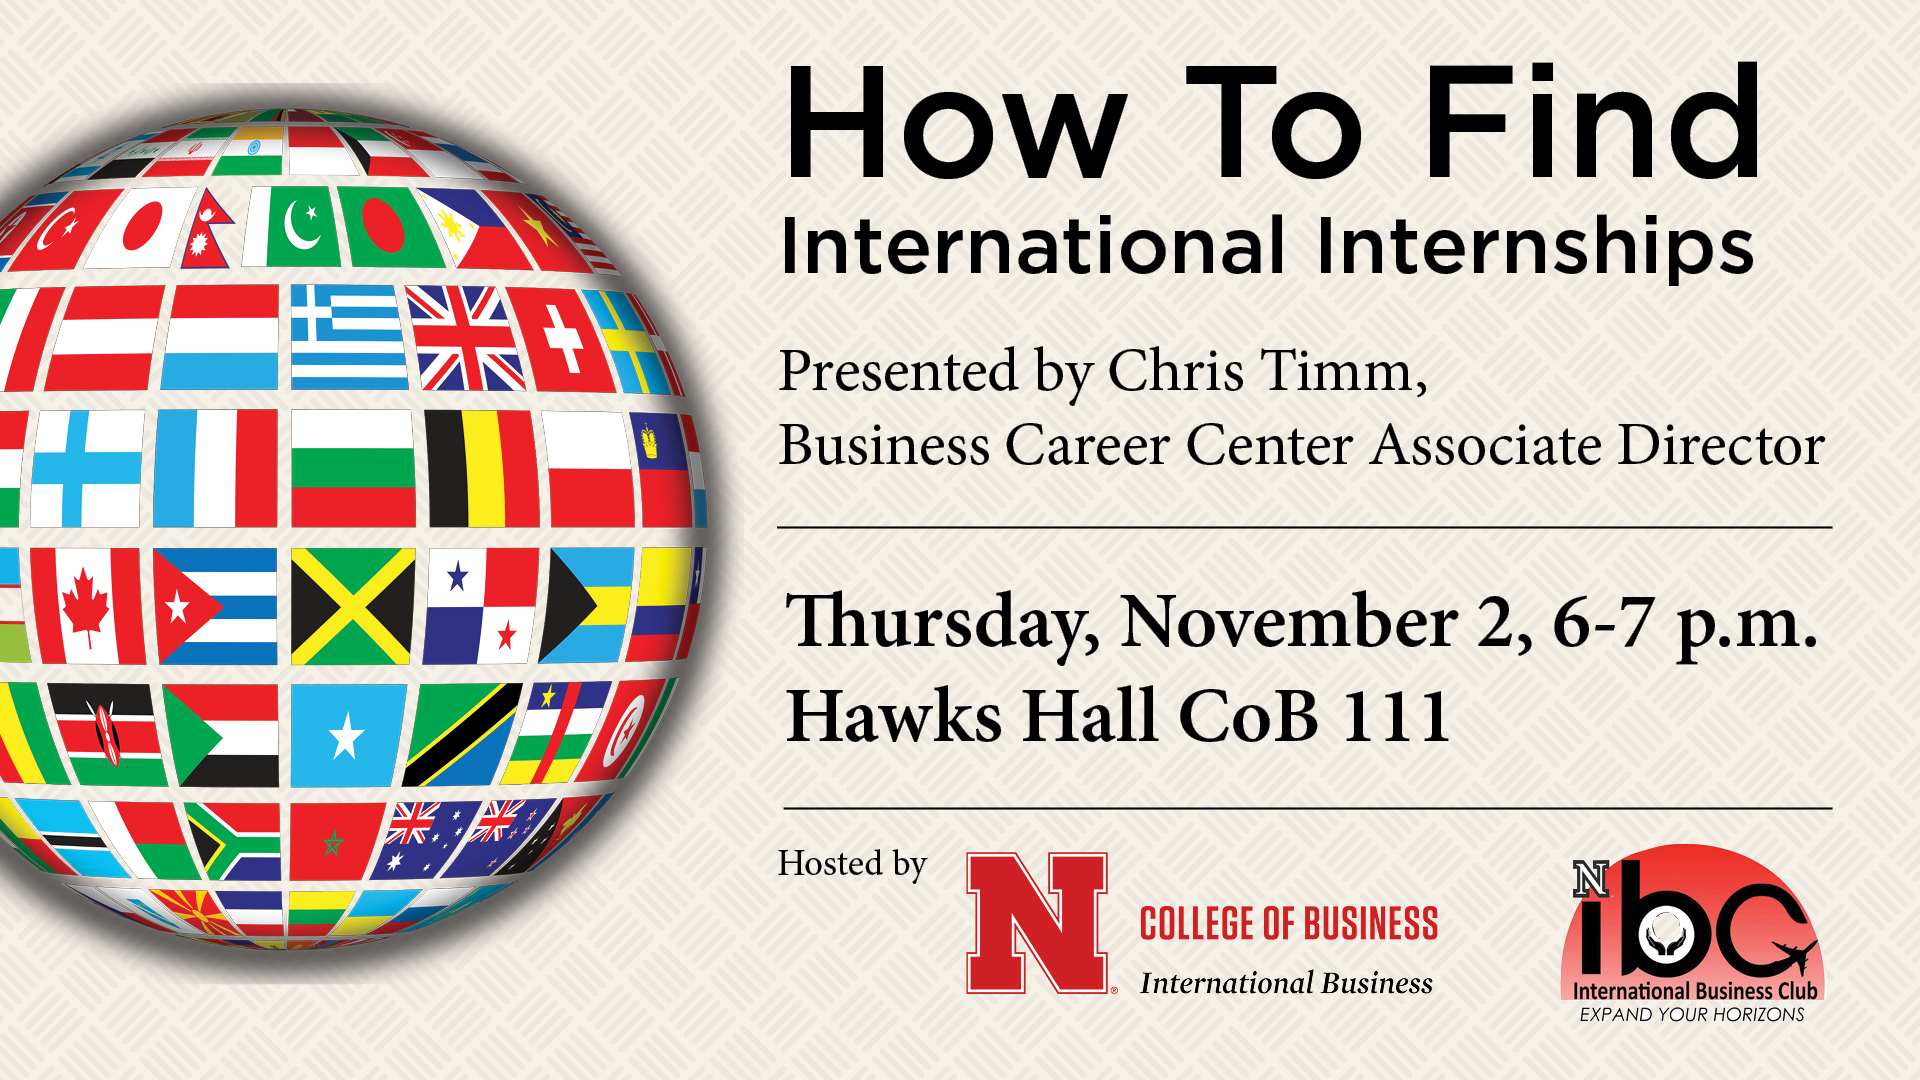 How to Find International Internships